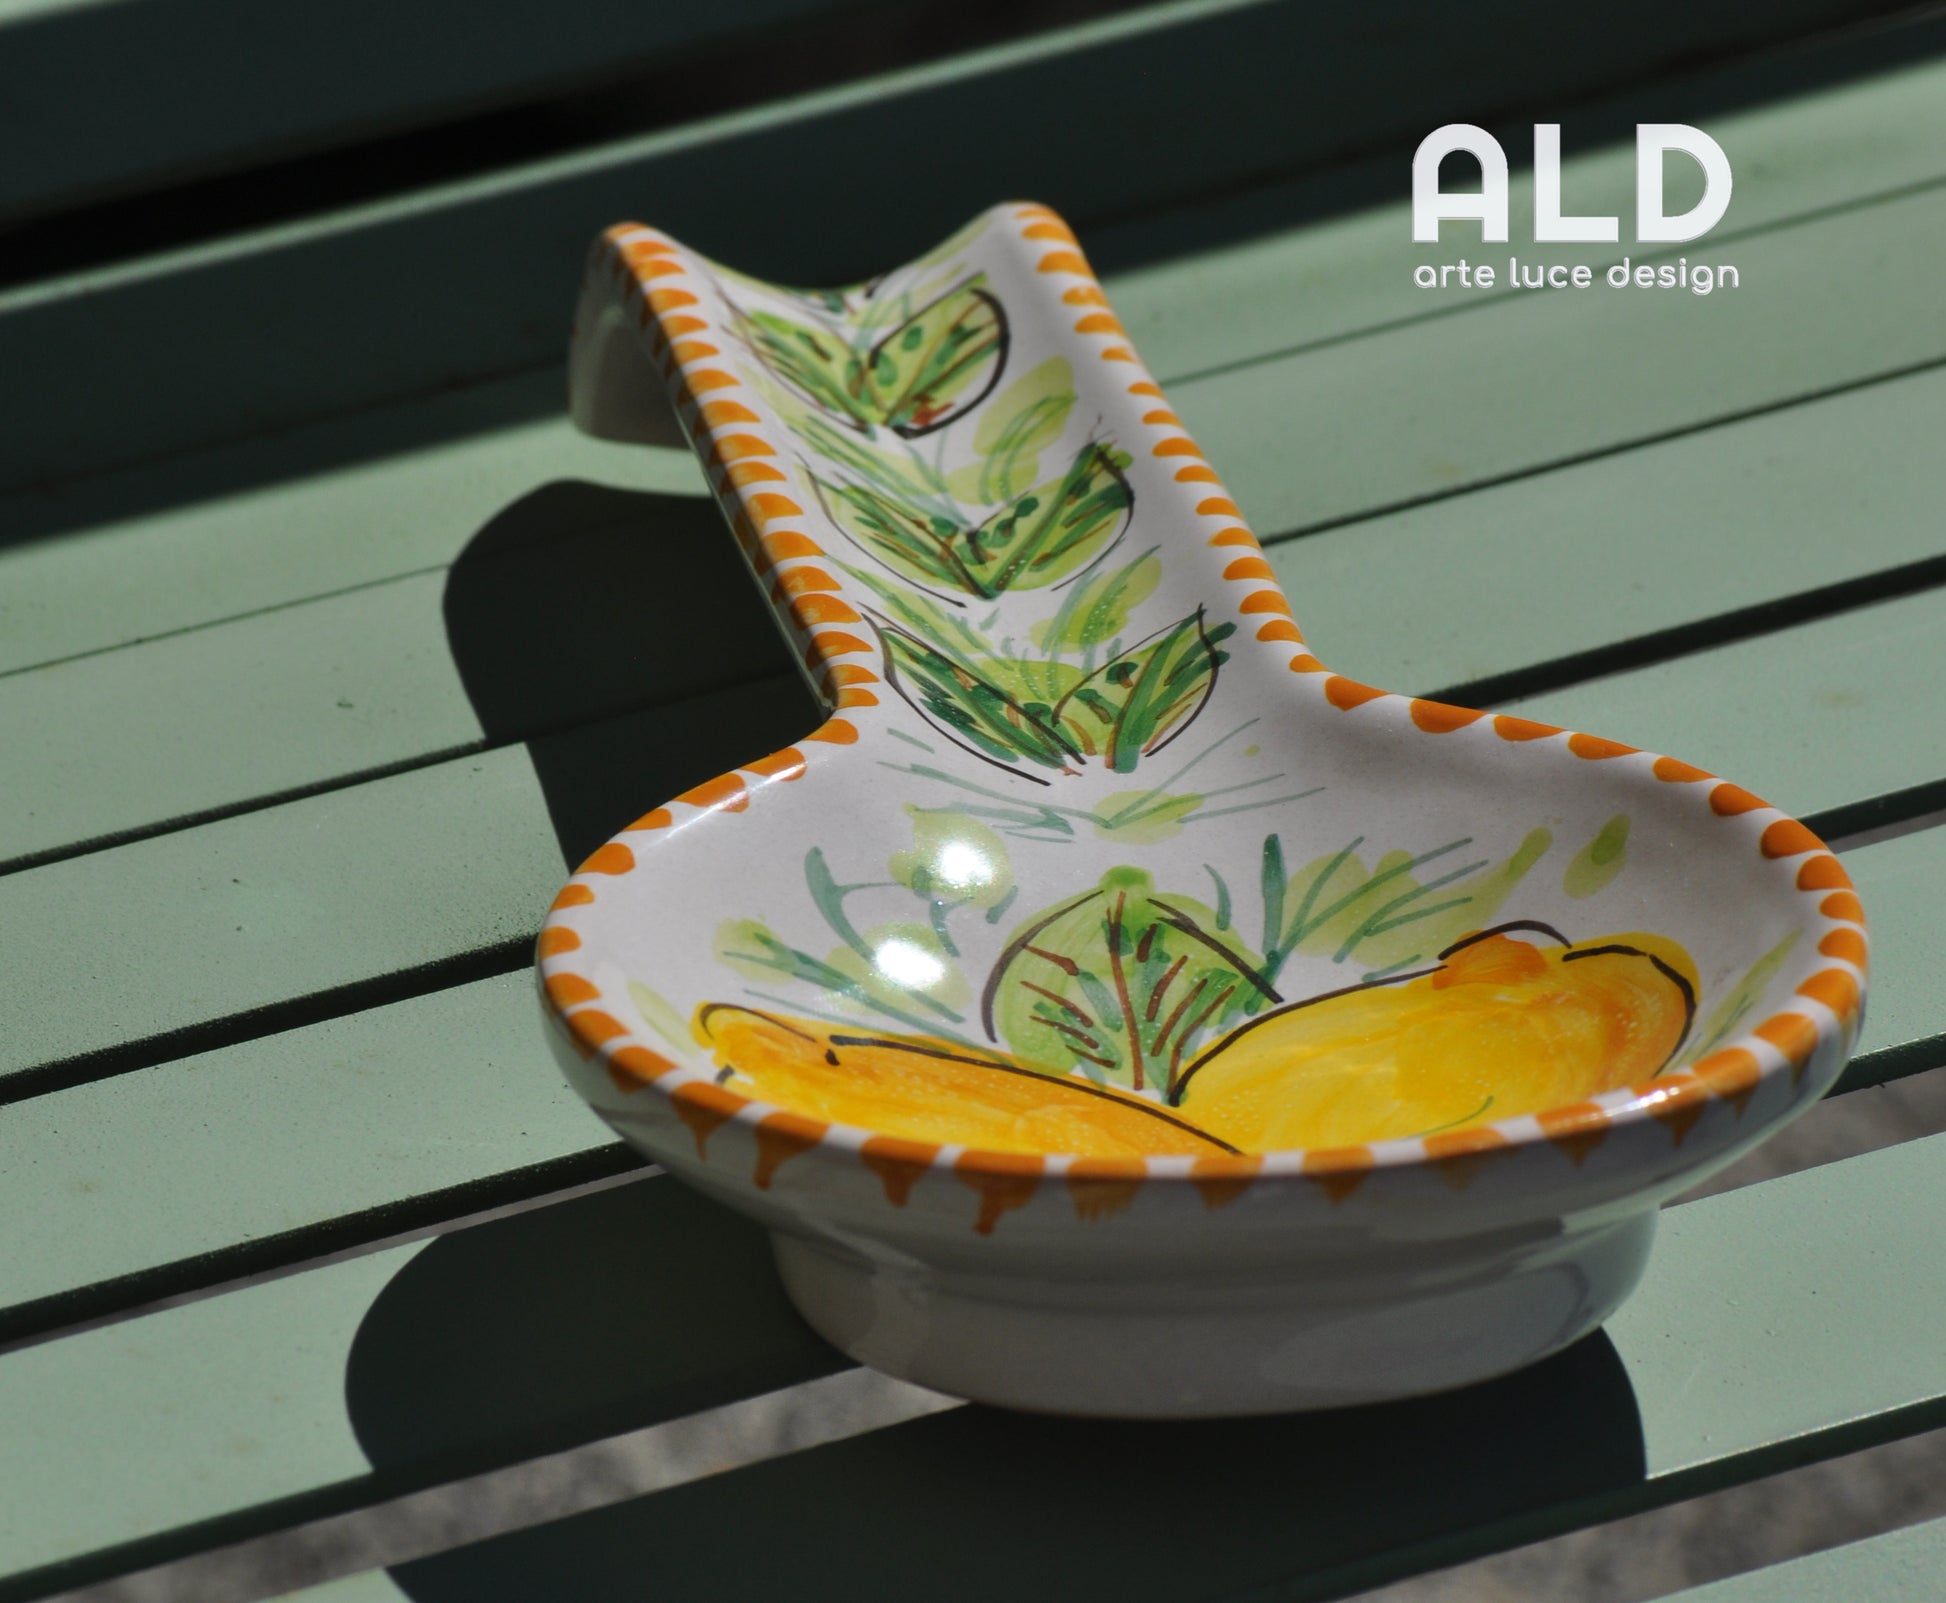 Poggia mestolo ceramica di Caltagirone porta cucchiaio da cucina decor –  arte e luce designers